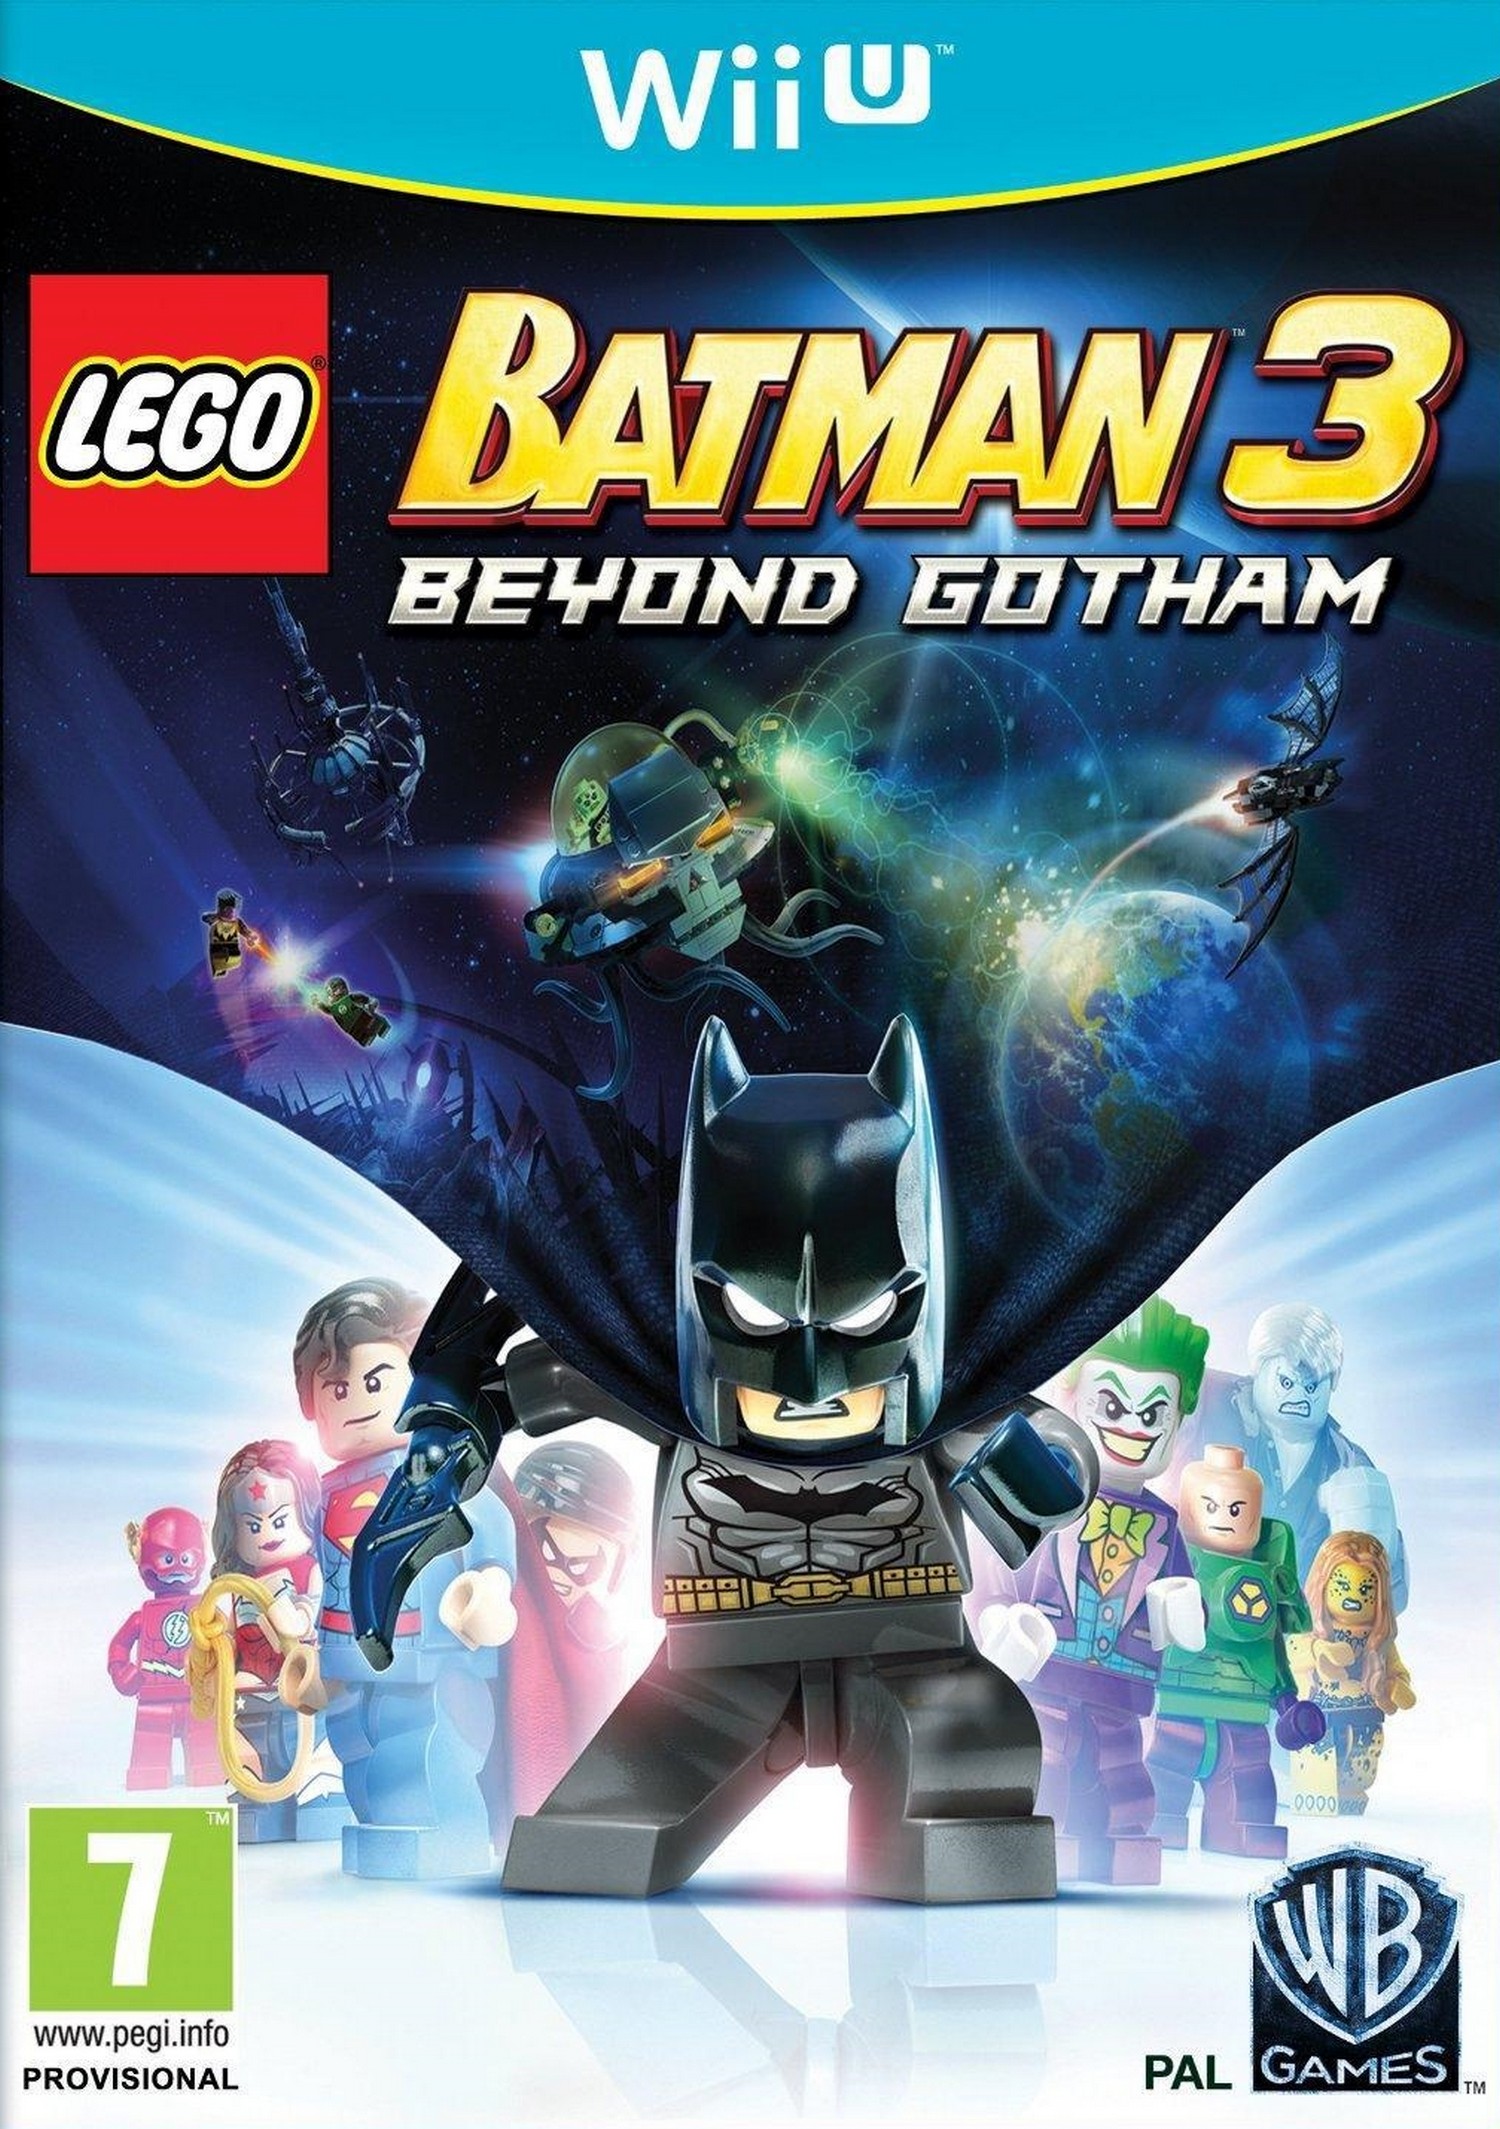 Wii U LEGO Batman 3: Beyond Gotham